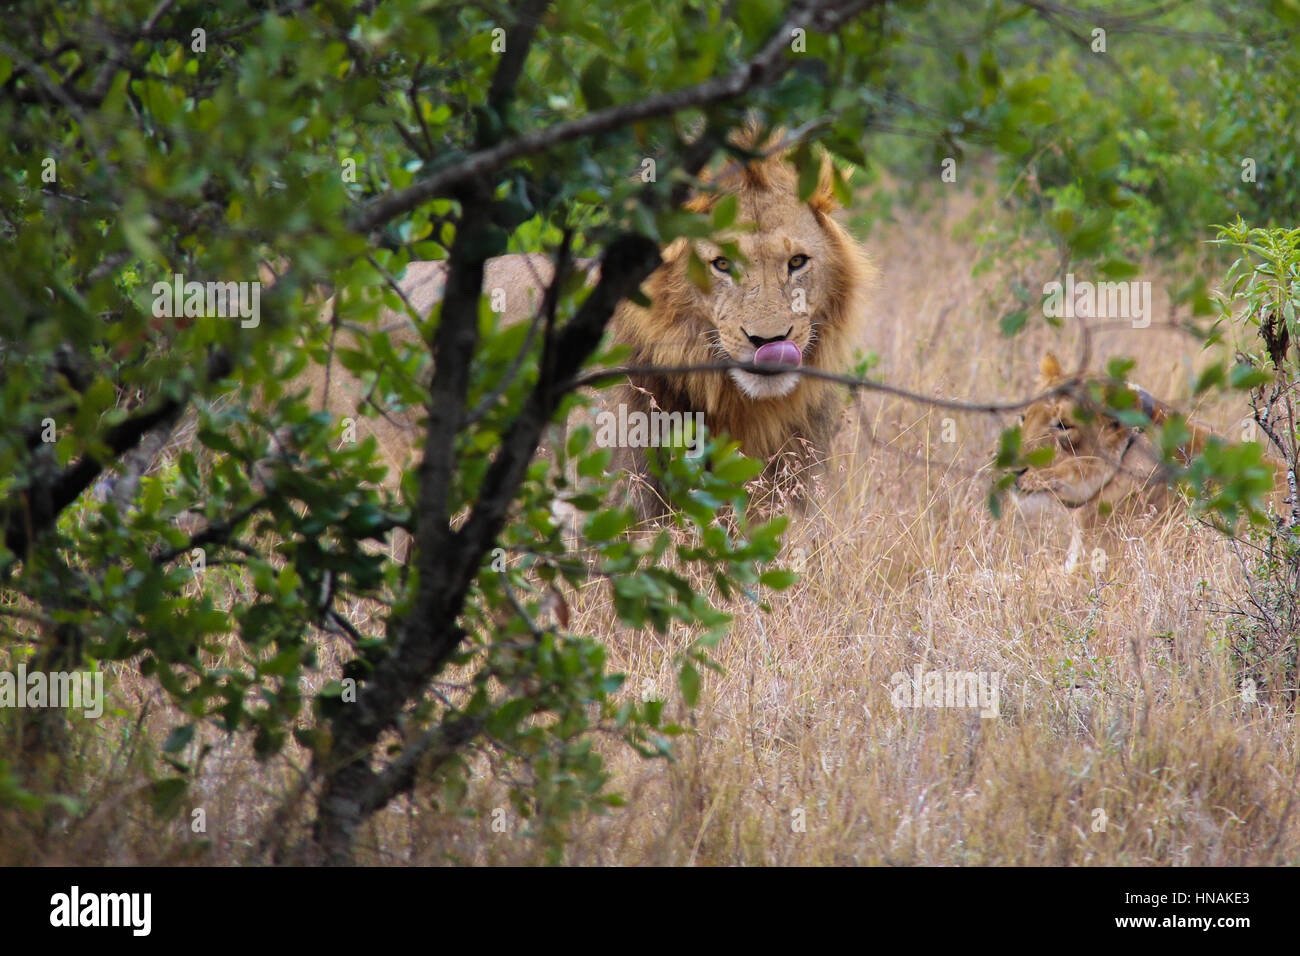 Leone maschio (panthera leo) dietro cespugli fissando nella fotocamera Foto Stock